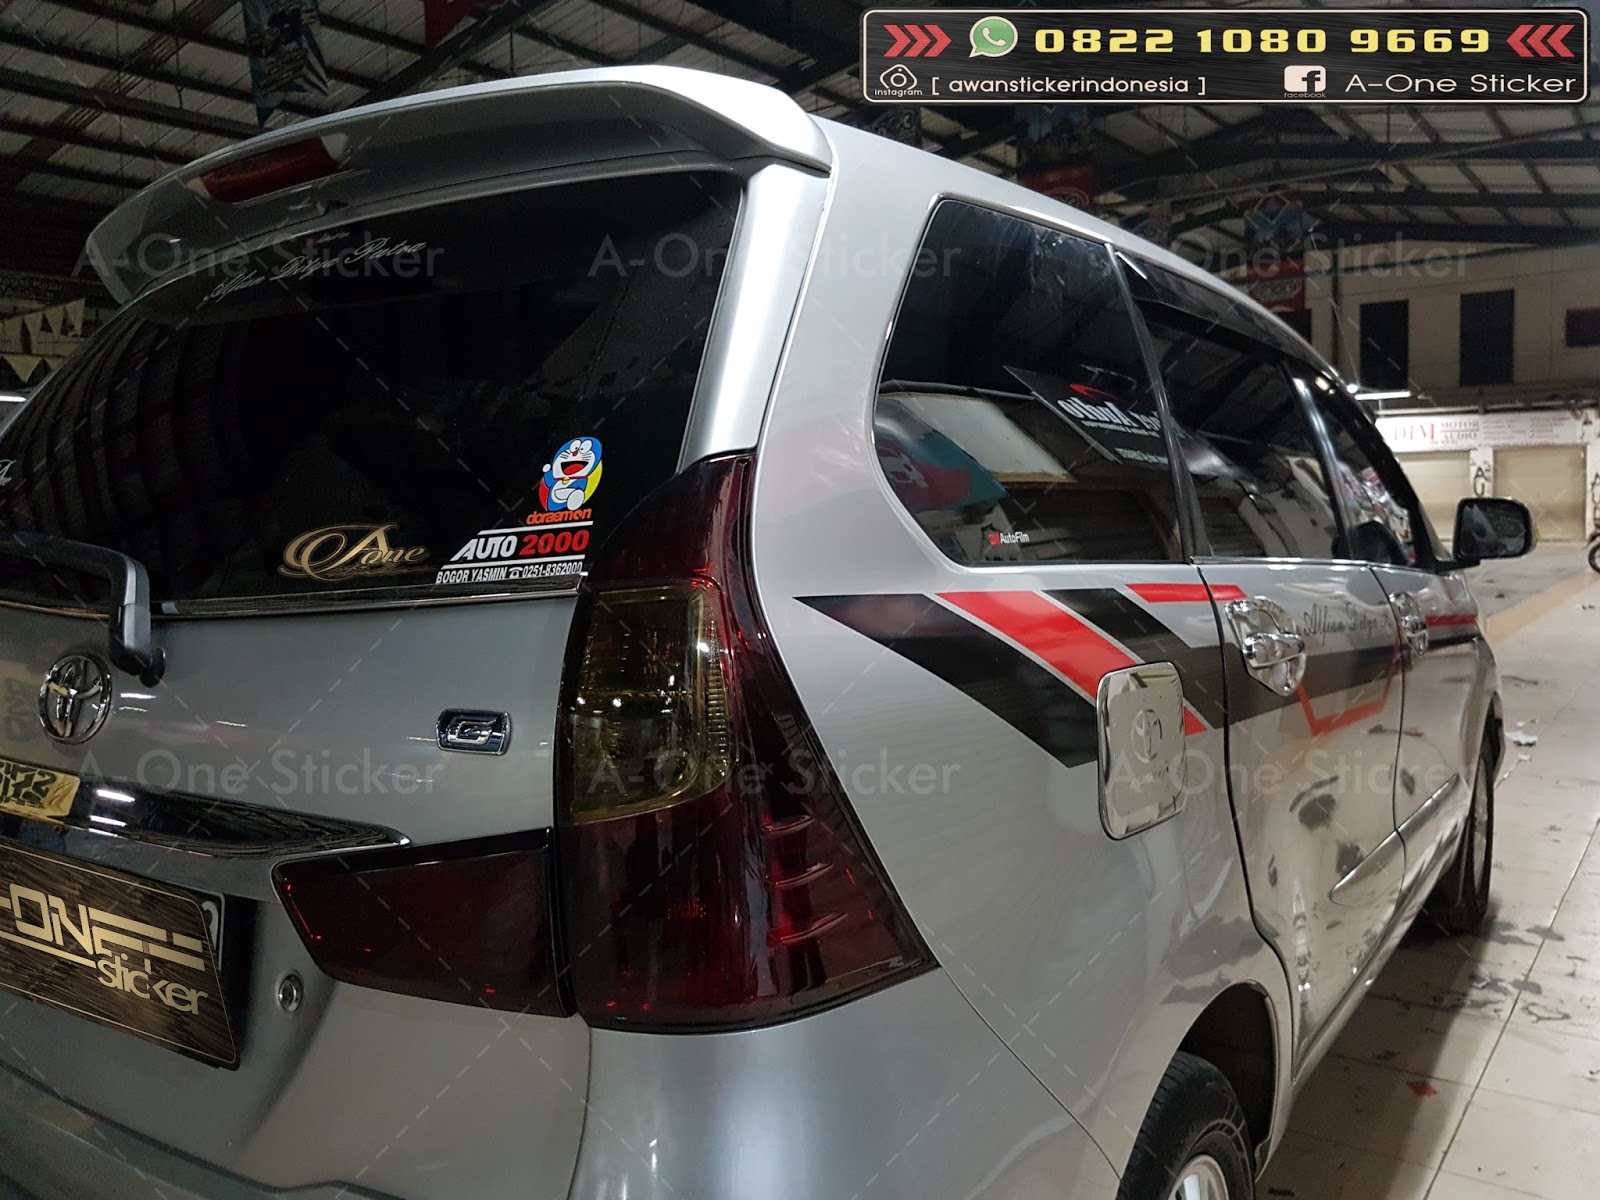  Cutting  Sticker  Mobil  modifikasi  Sticker  Depok Jakarta 